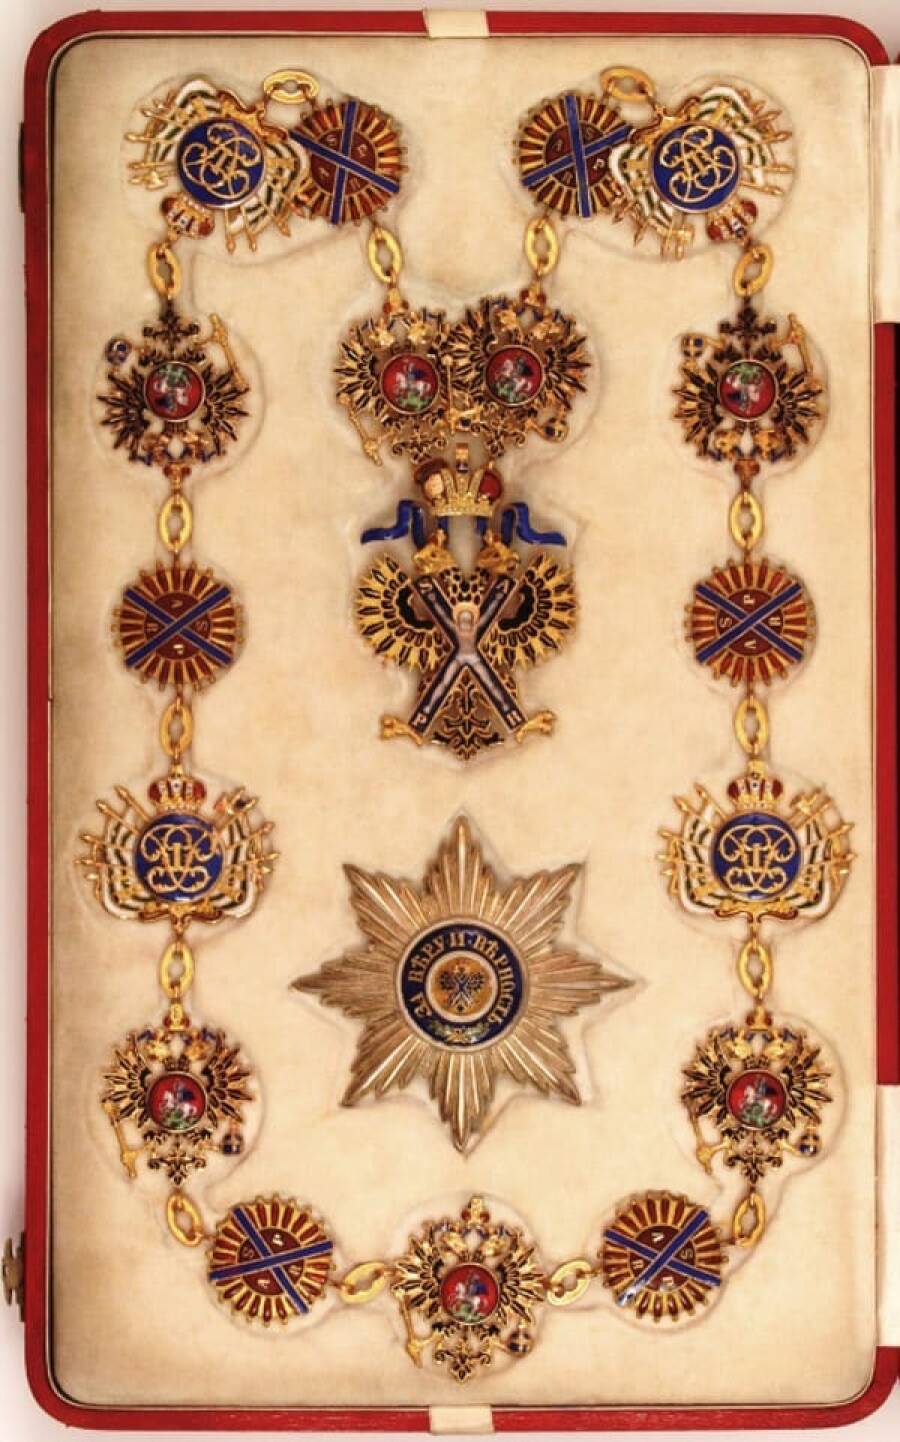 Знак ордена Святого апостола Андрея Первозванного, изготовленный фирмой «Эдуард» в 1903-1908 гг.